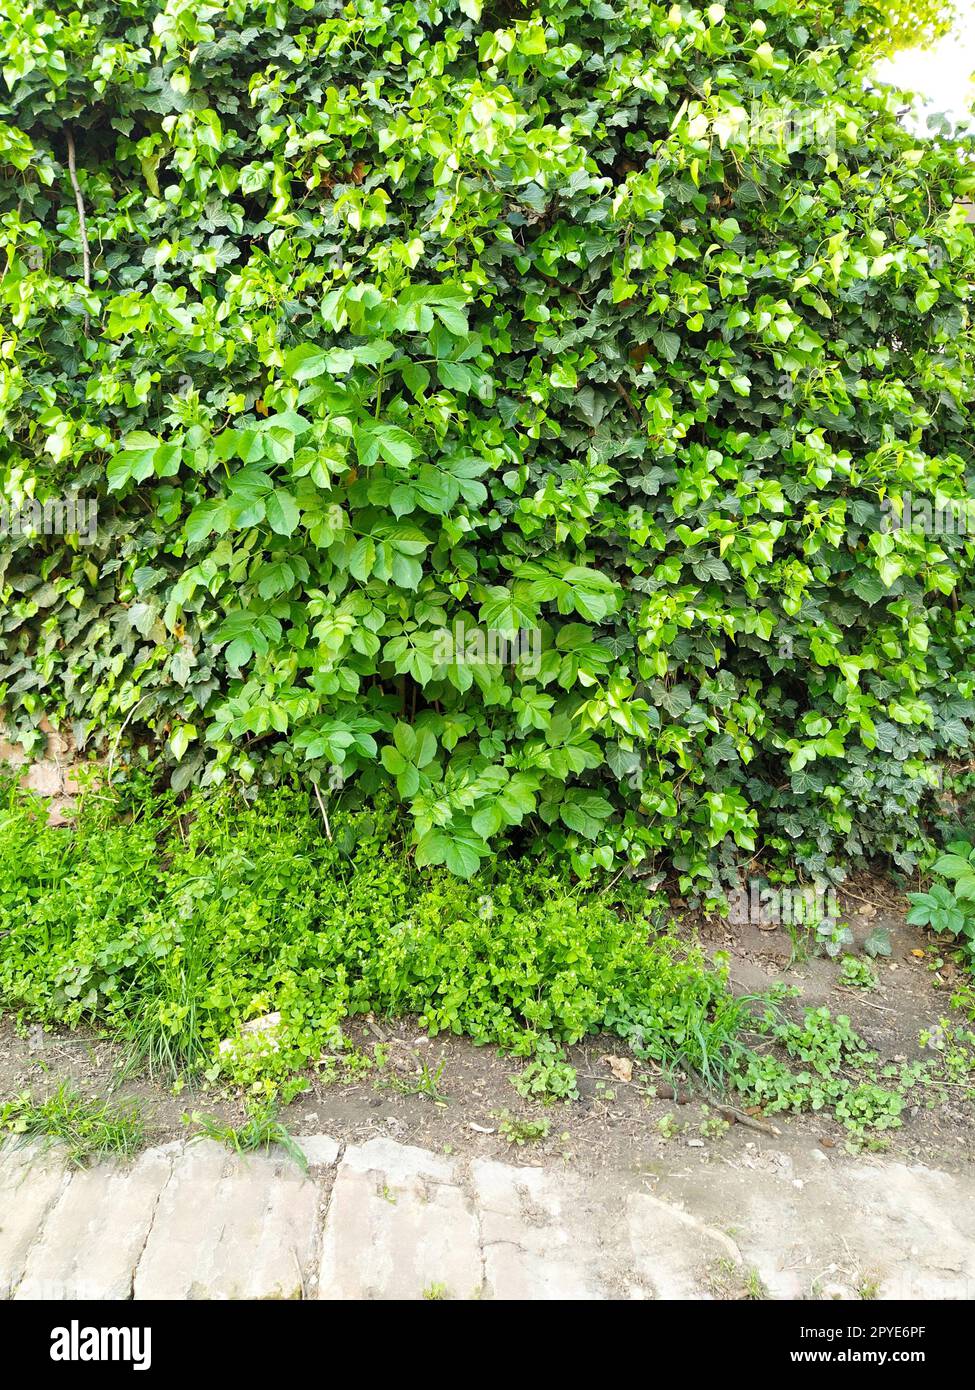 Blätter und junge Efeu-Triebe klettern die Mauer hoch. Europäischer Wald. Schleichende parasitäre Pflanze. Grünes Laub. Dreieckiges Blatt. Efeu oder Hedera Helix. Immergrüner Kletterstrauch, Kletterpflanze. Stockfoto